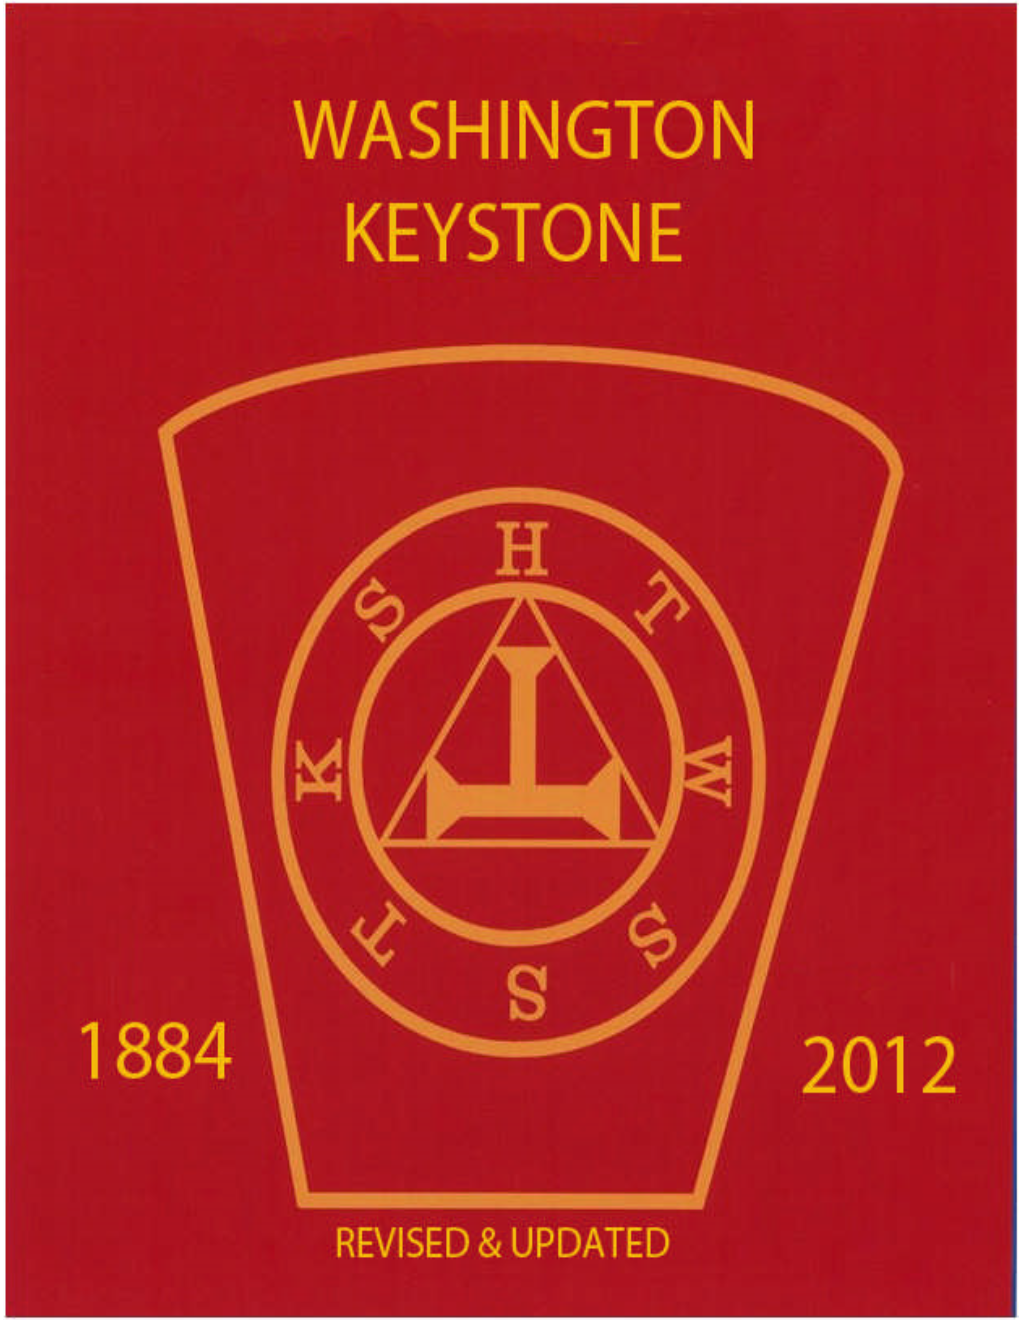 WASHINGTON KEYSTONE 1984 - 2012 Revised and Updated